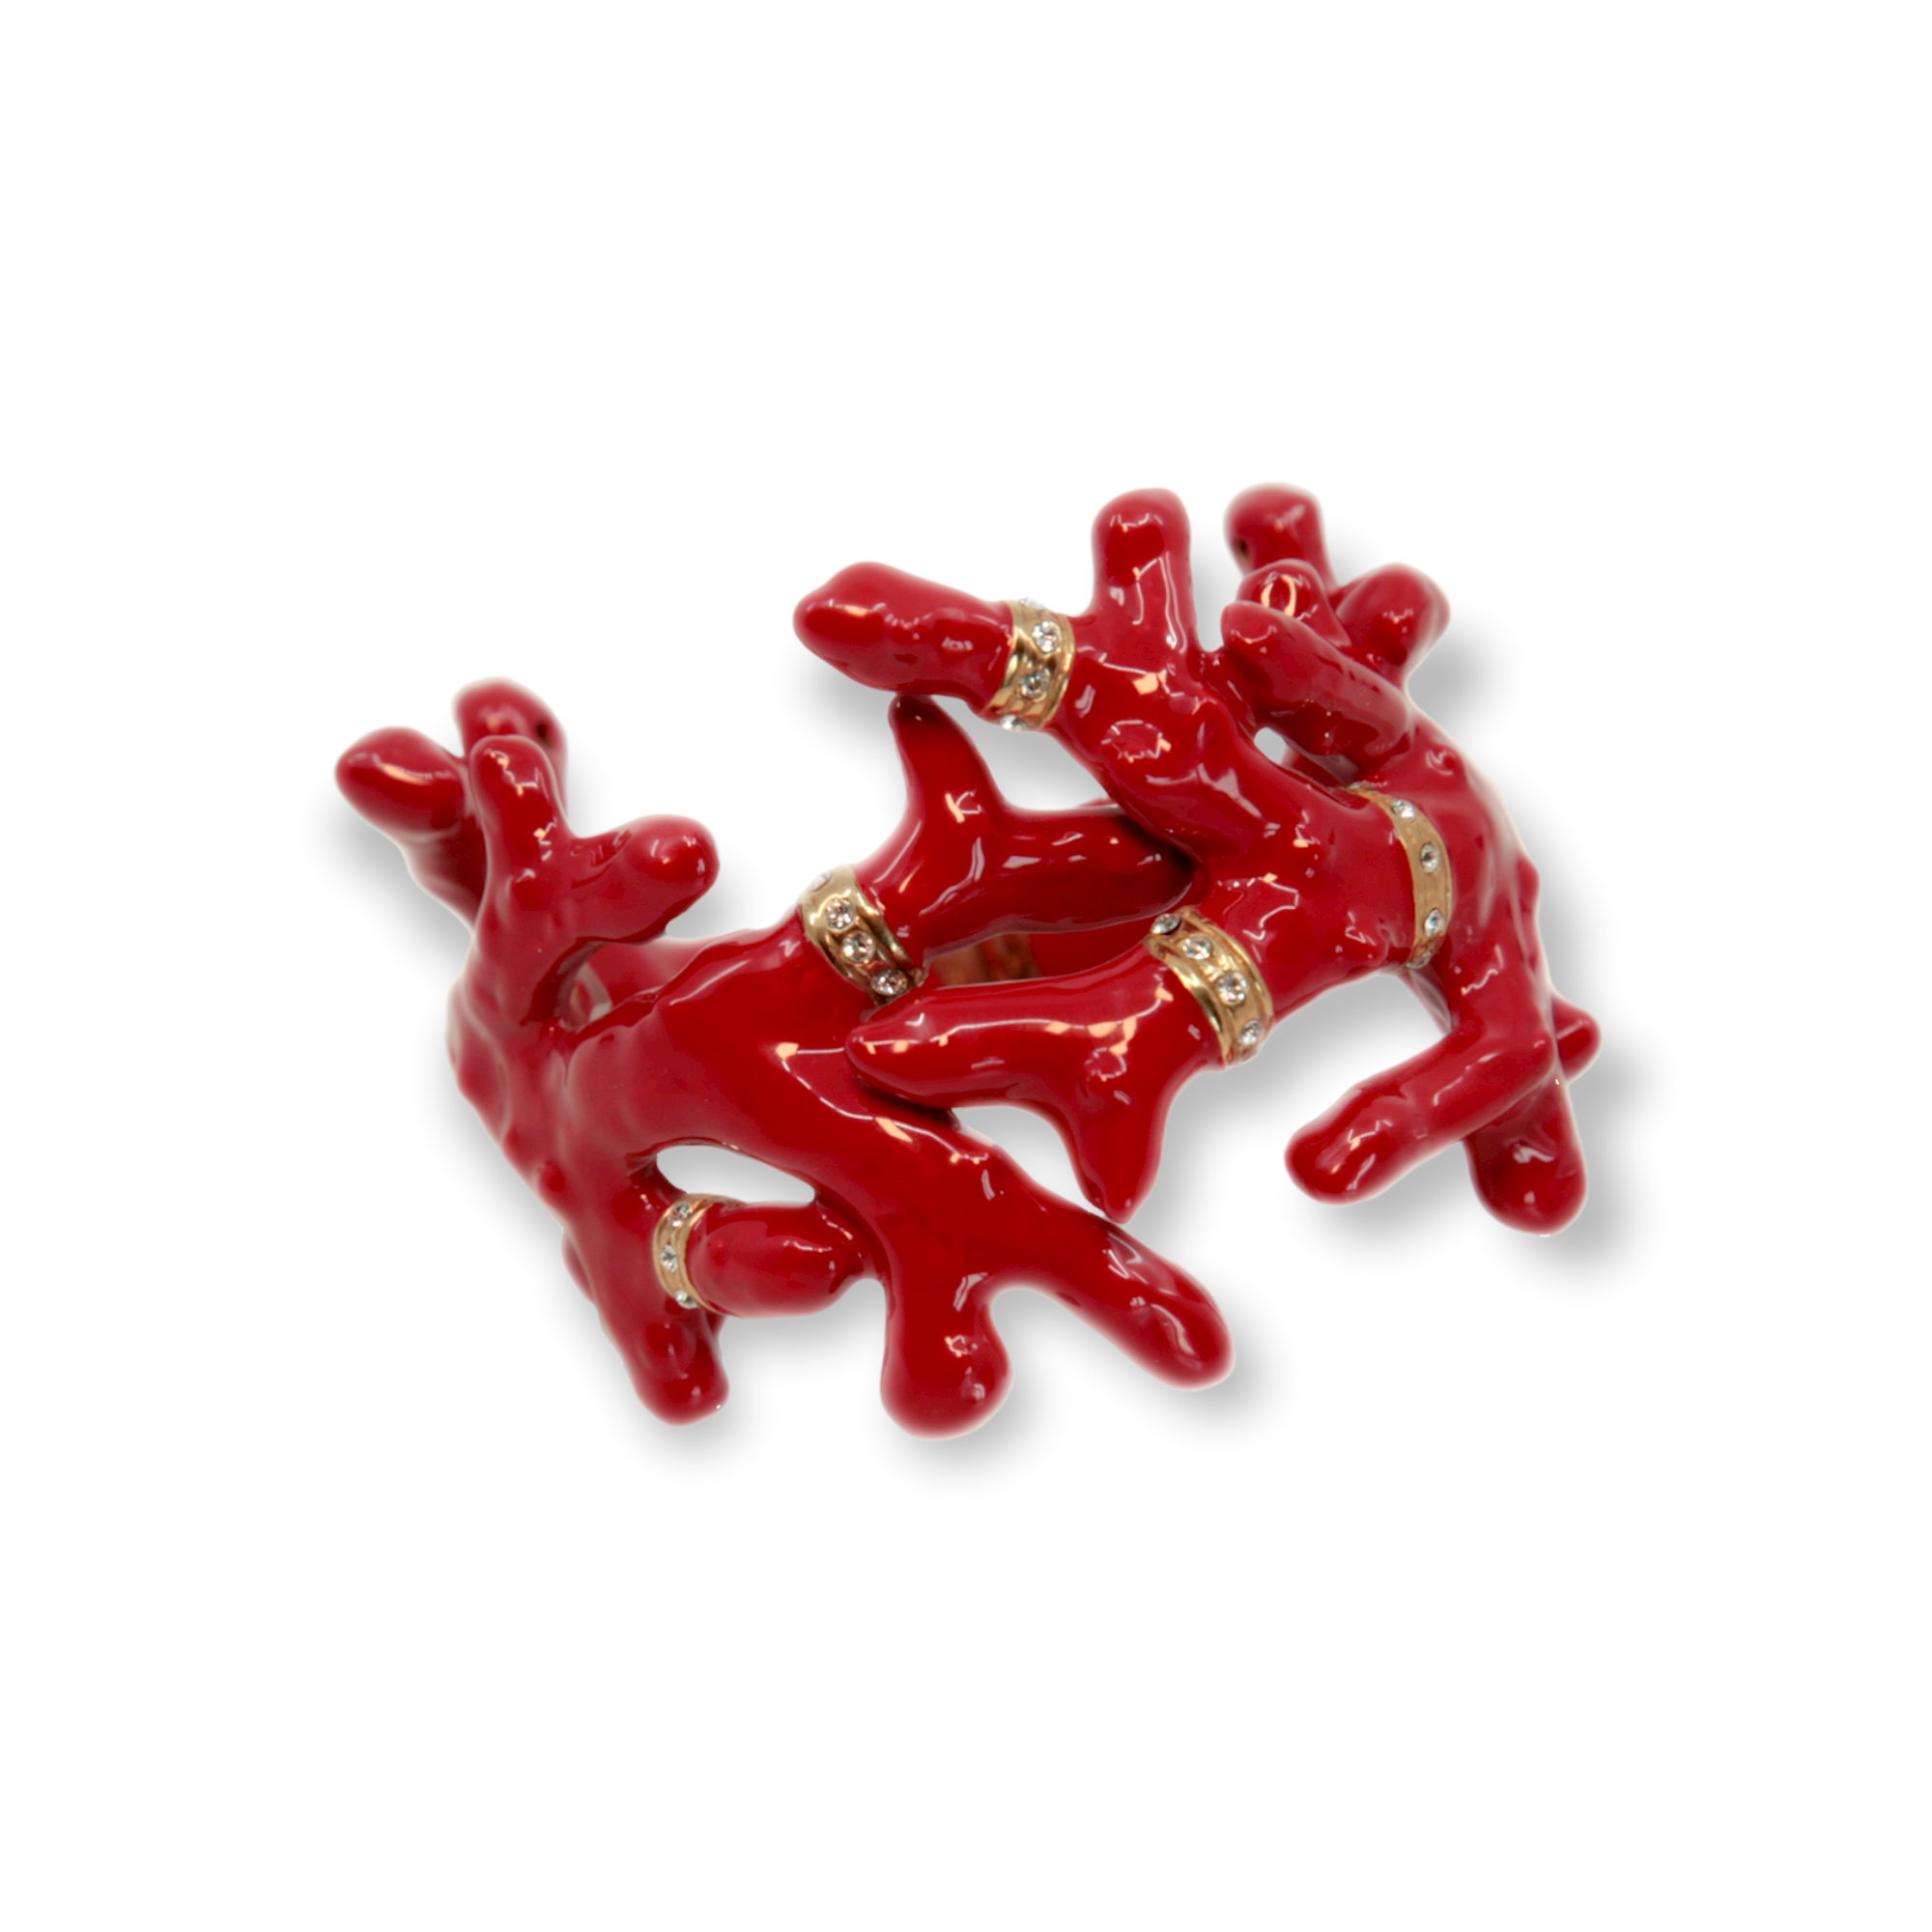 Bracelet coral-shaped red